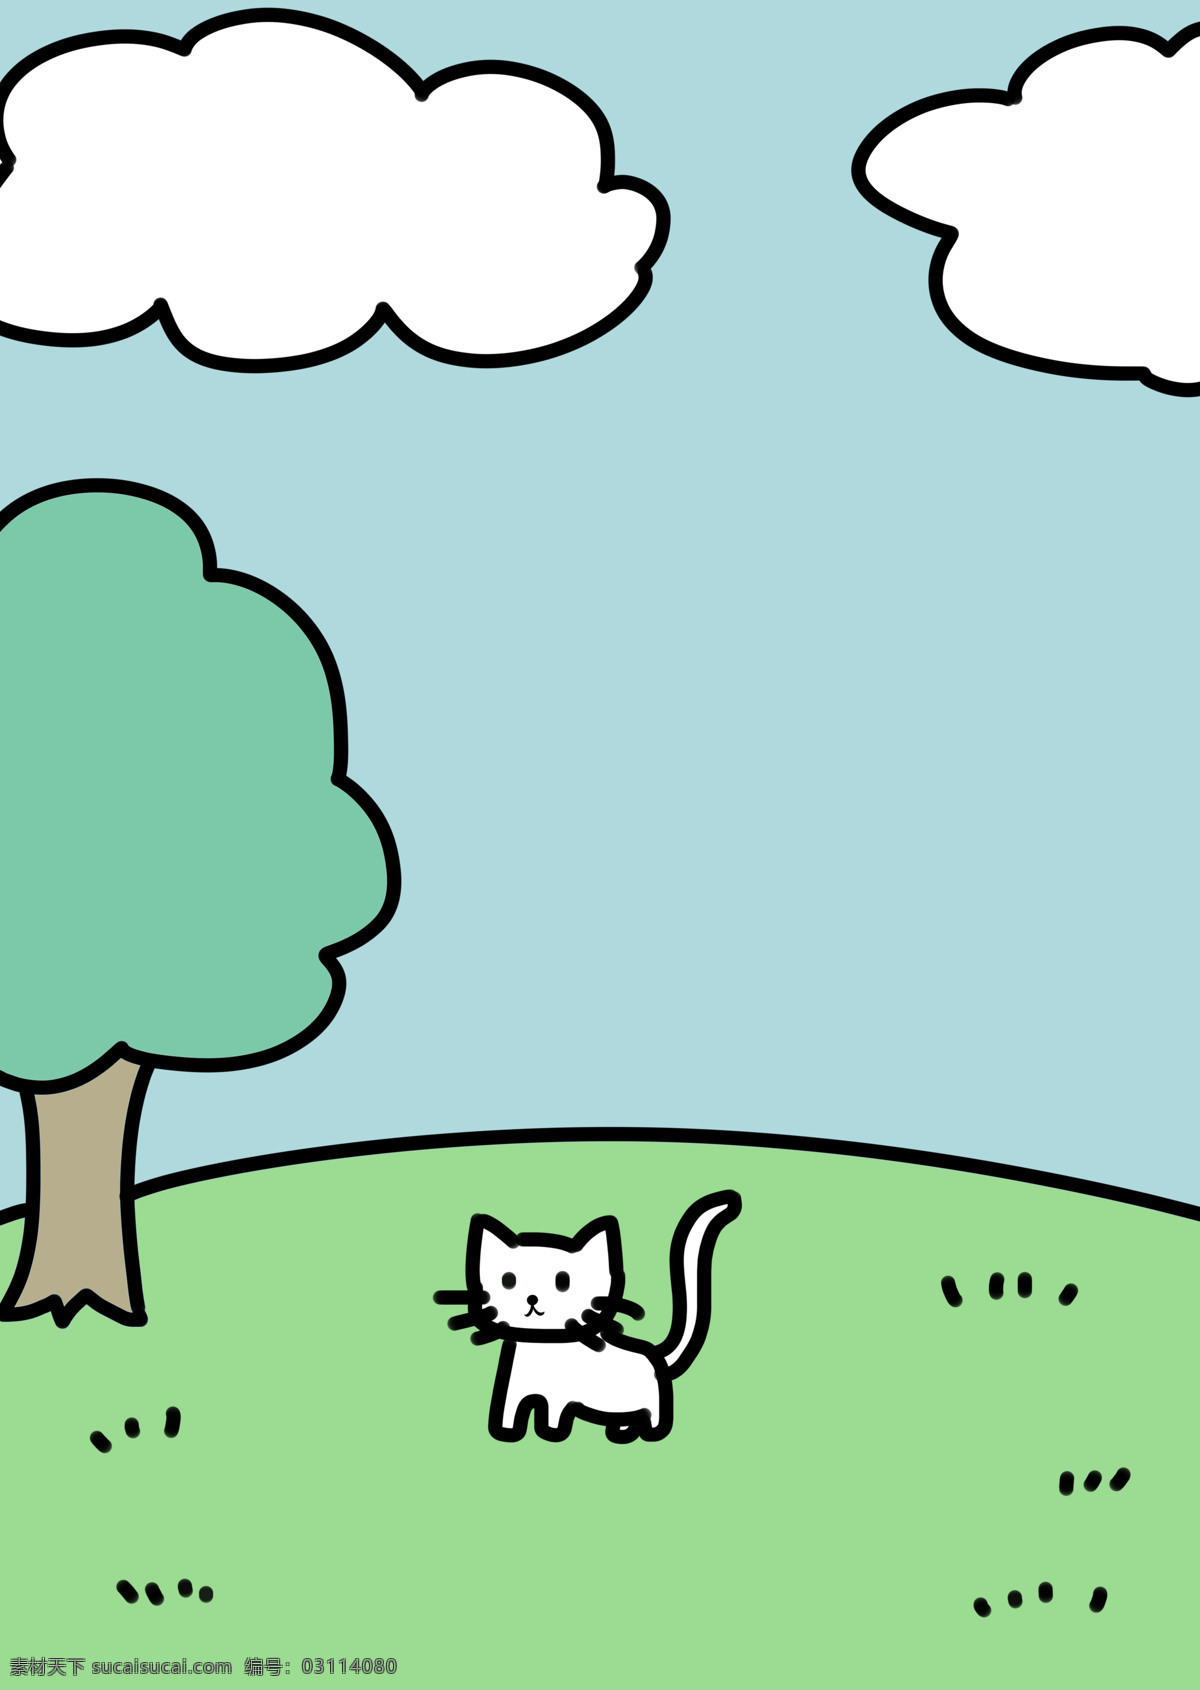 猫 森林 草地 云朵 可爱 插画 动漫动画